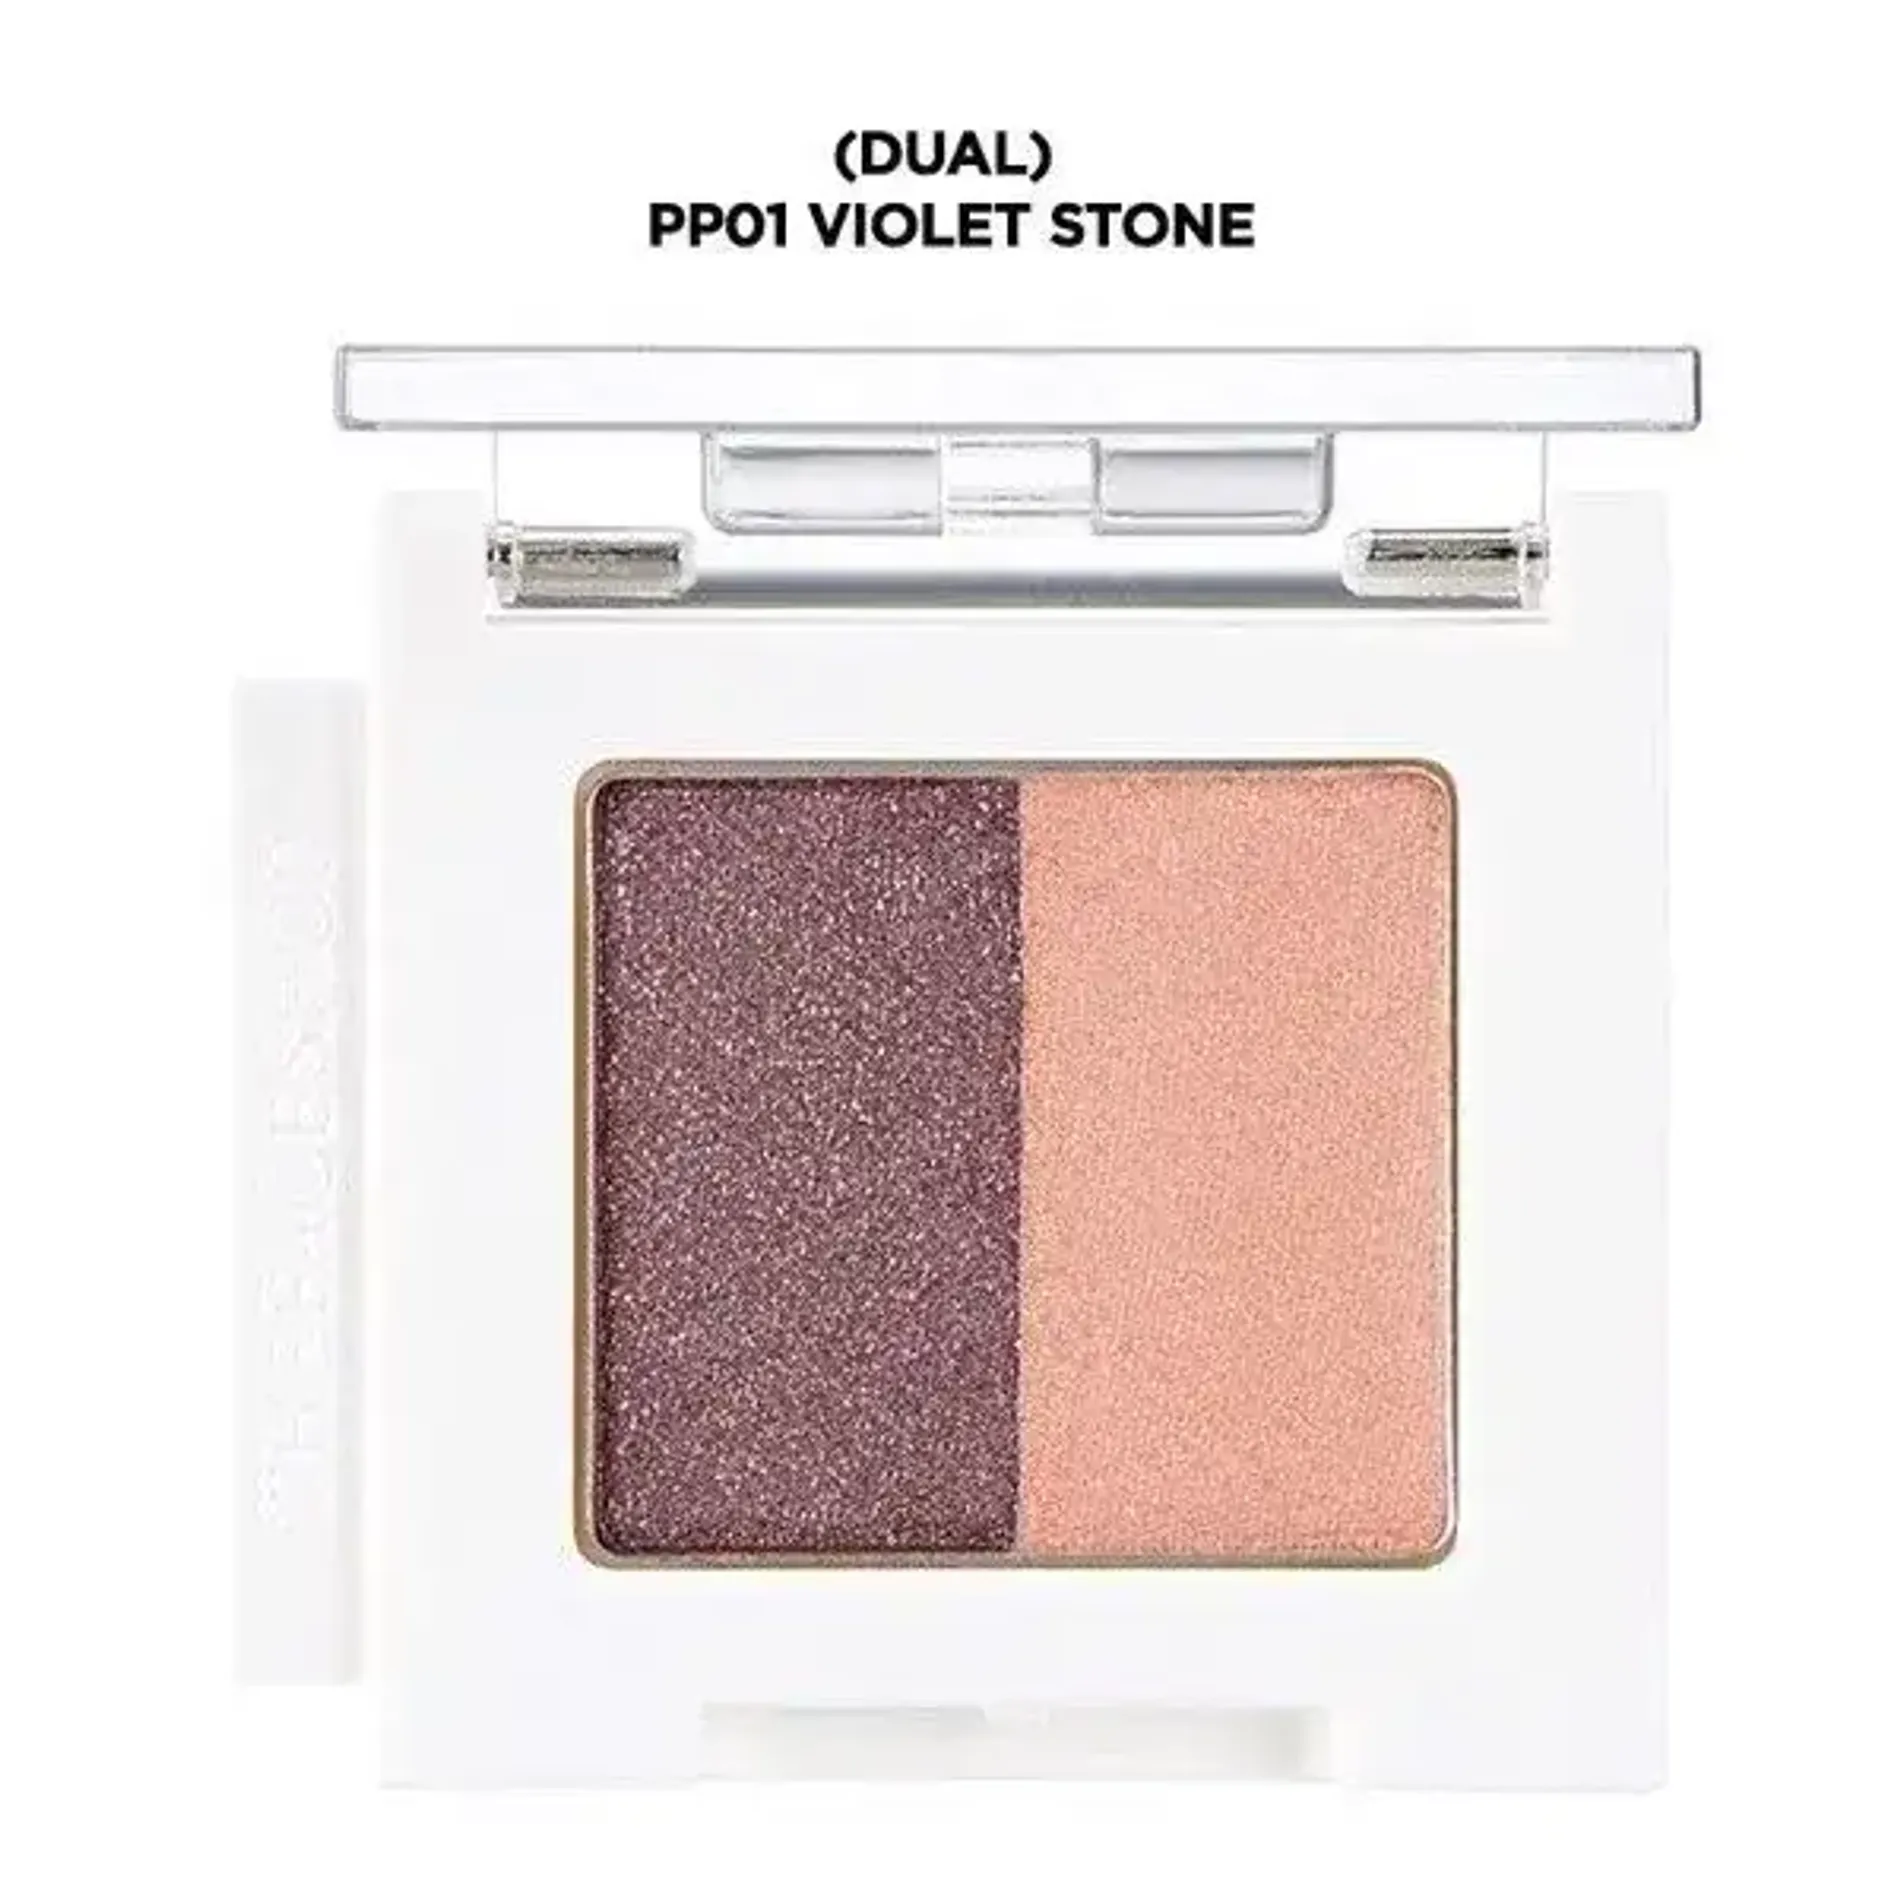 mau-mat-trang-diem-mono-cube-eyeshadow-dual-pp01-violet-stone-1